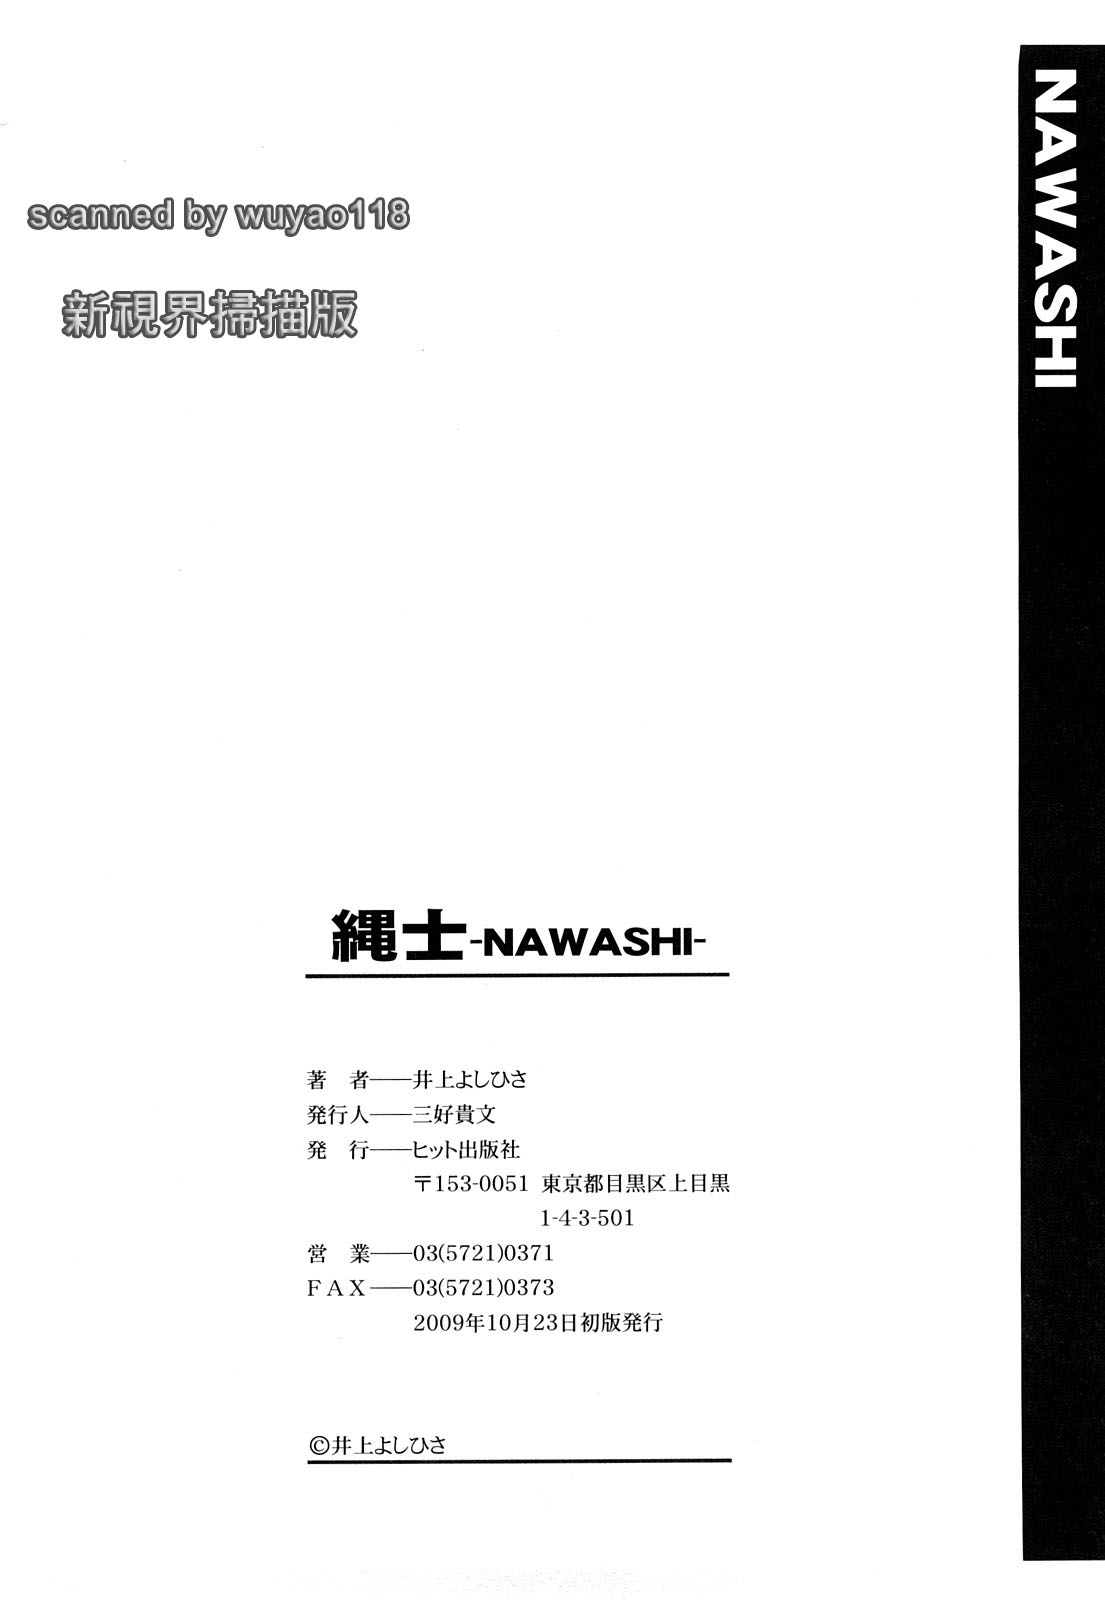 [Inoue Yoshihisa] Nawashi (CN) (成年コミック) [井上よしひさ] 縄士 (CN)